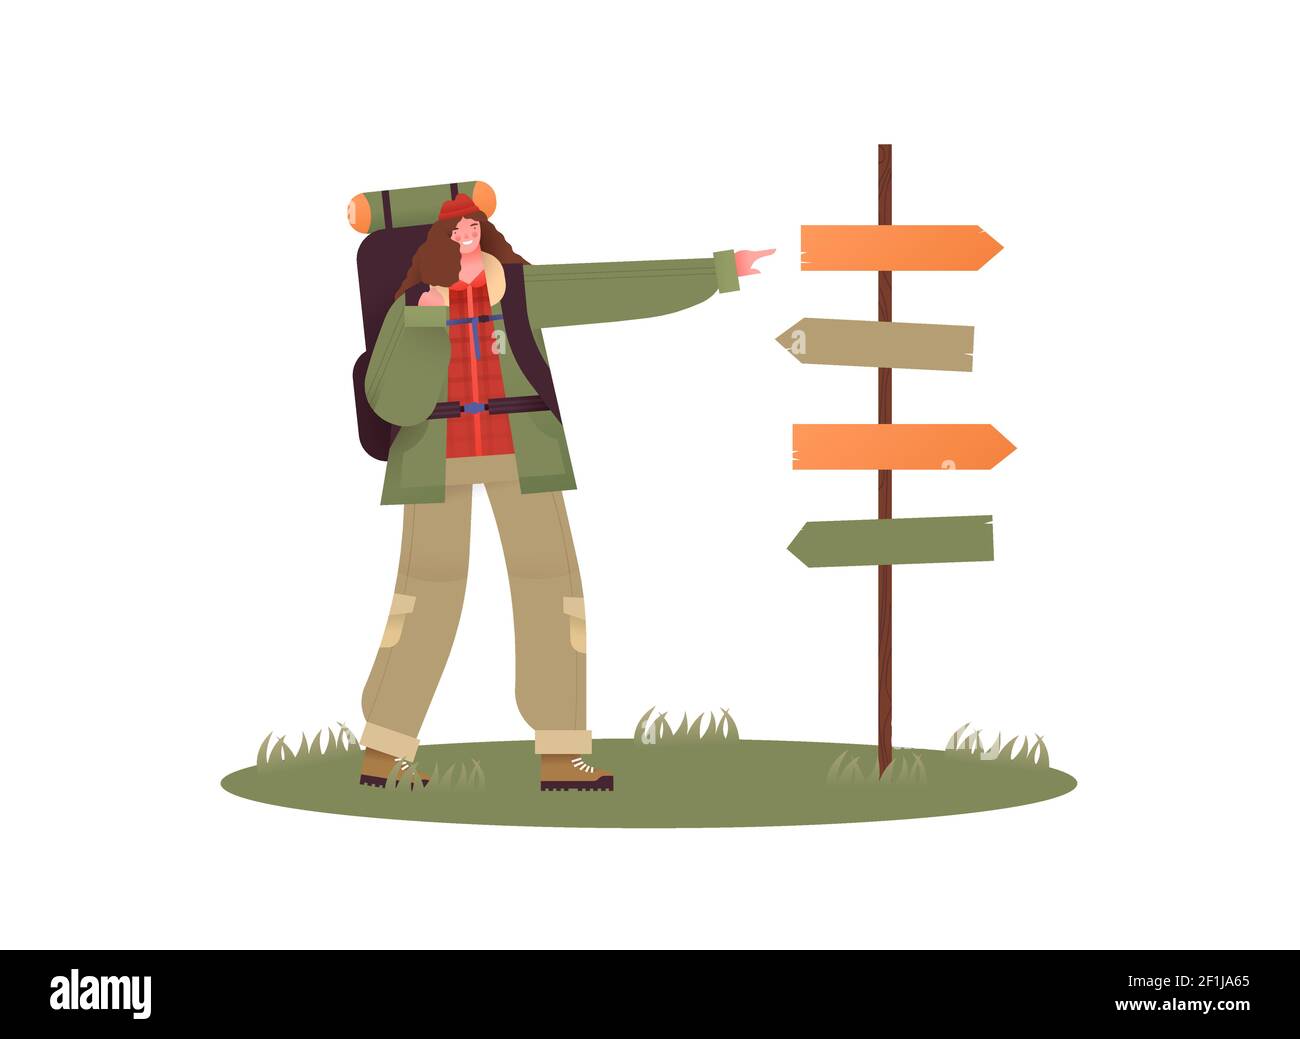 Glückliche Frau wandern mit großen Campingrucksack zeigt auf leeren Guide Post für Richtungen. Outdoor-Reise-Konzept Mädchen im Campingplatz, flache Cartoon-Chara Stock Vektor